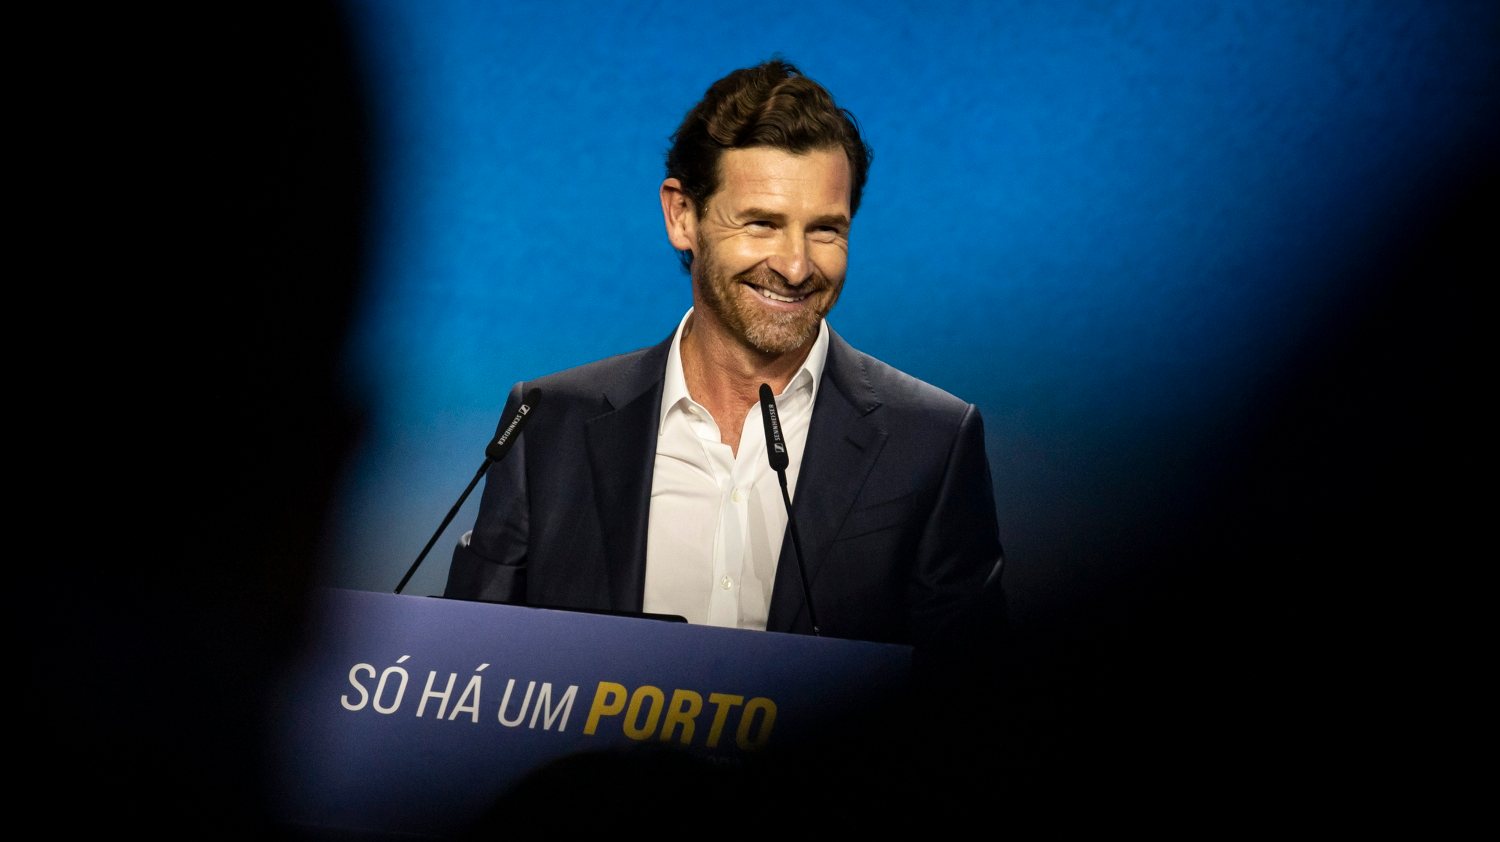 André Villas-Boas regressou esta quinta-feira às apresentações na sua sede de campanha, desta vez dos membros da Comissão Executiva da SAD do FC Porto